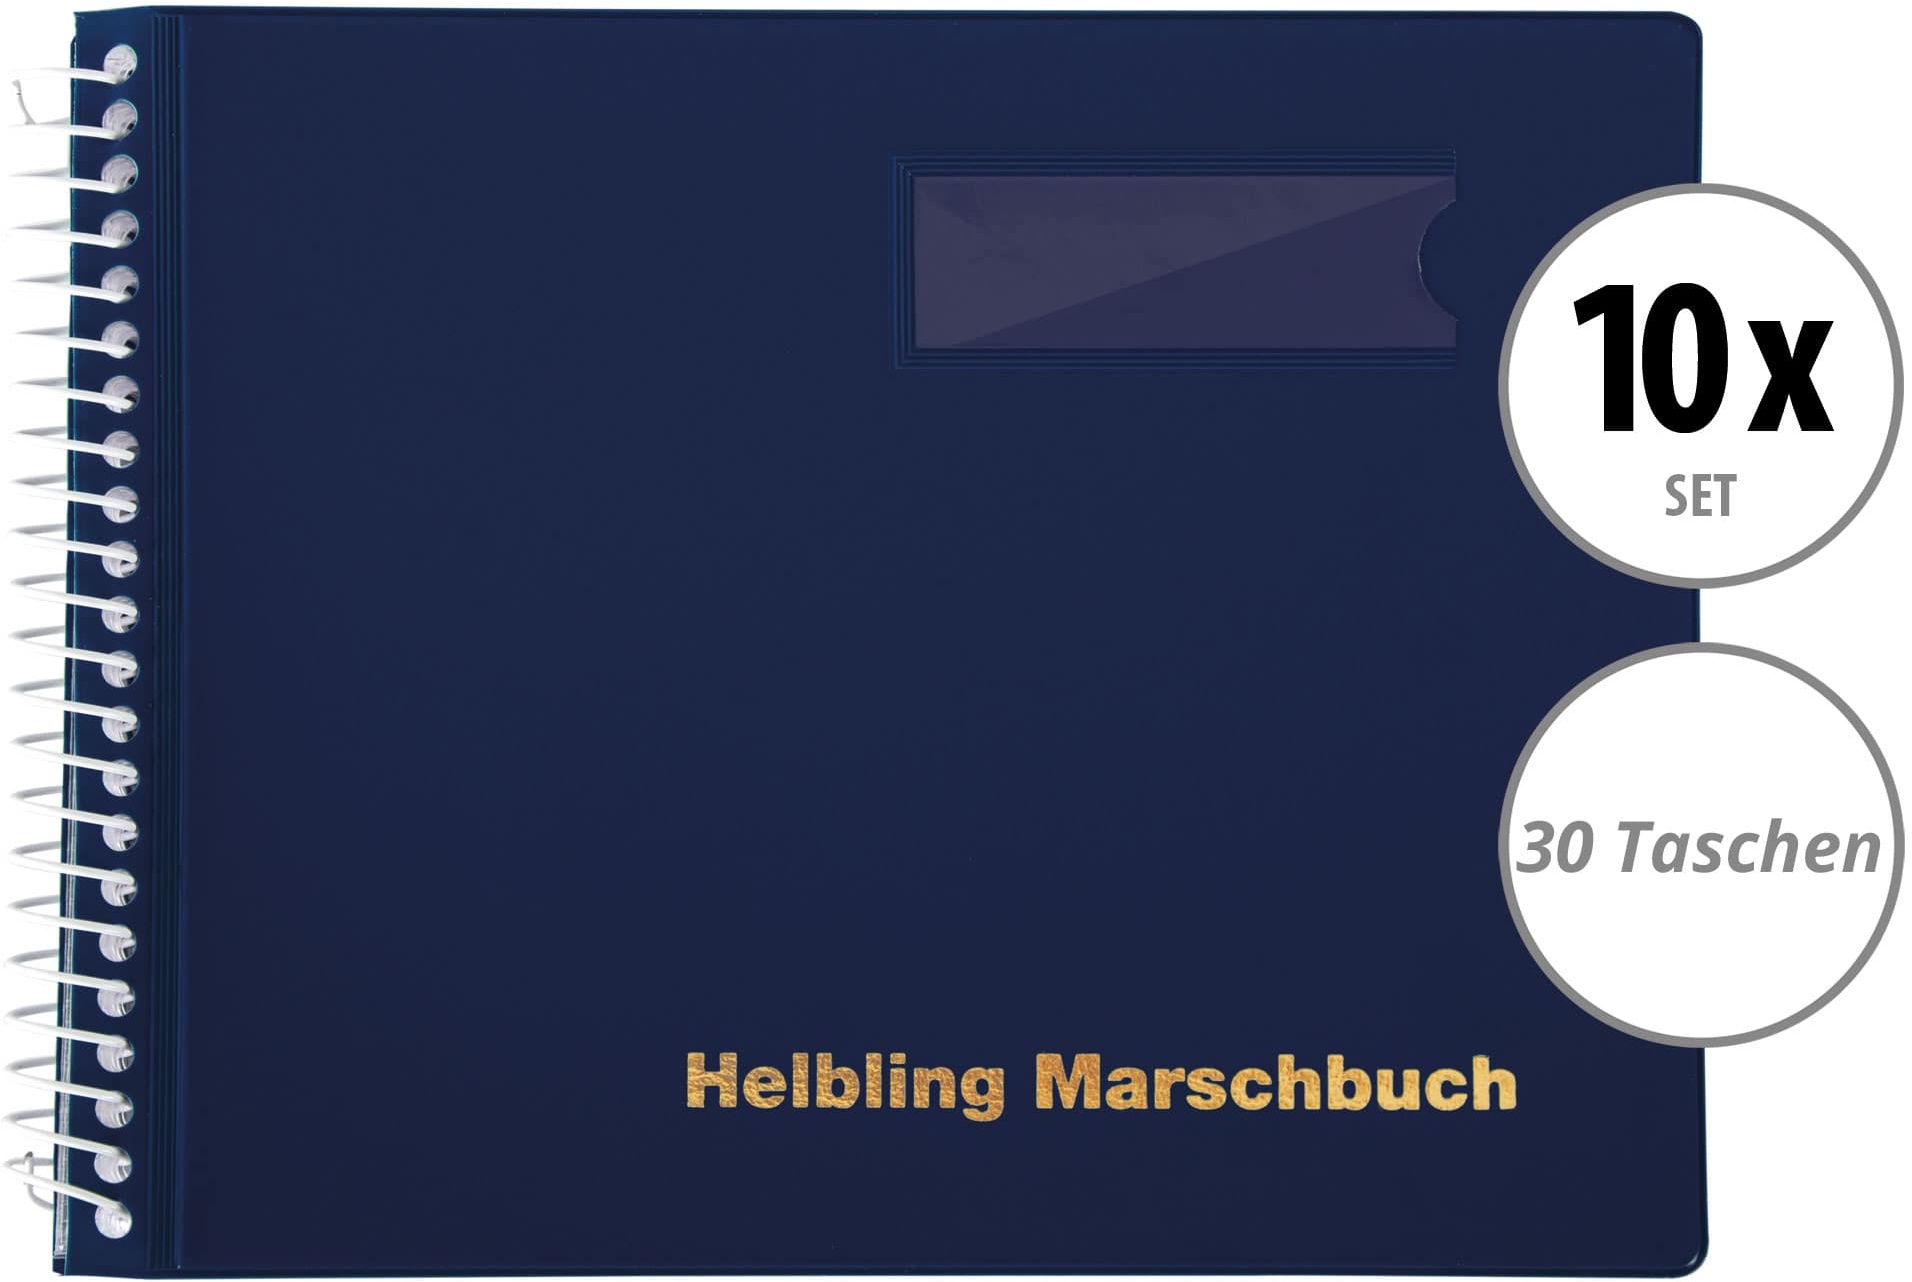 Helbling BMB30 Marschbuch blau 30 Taschen 10x Set